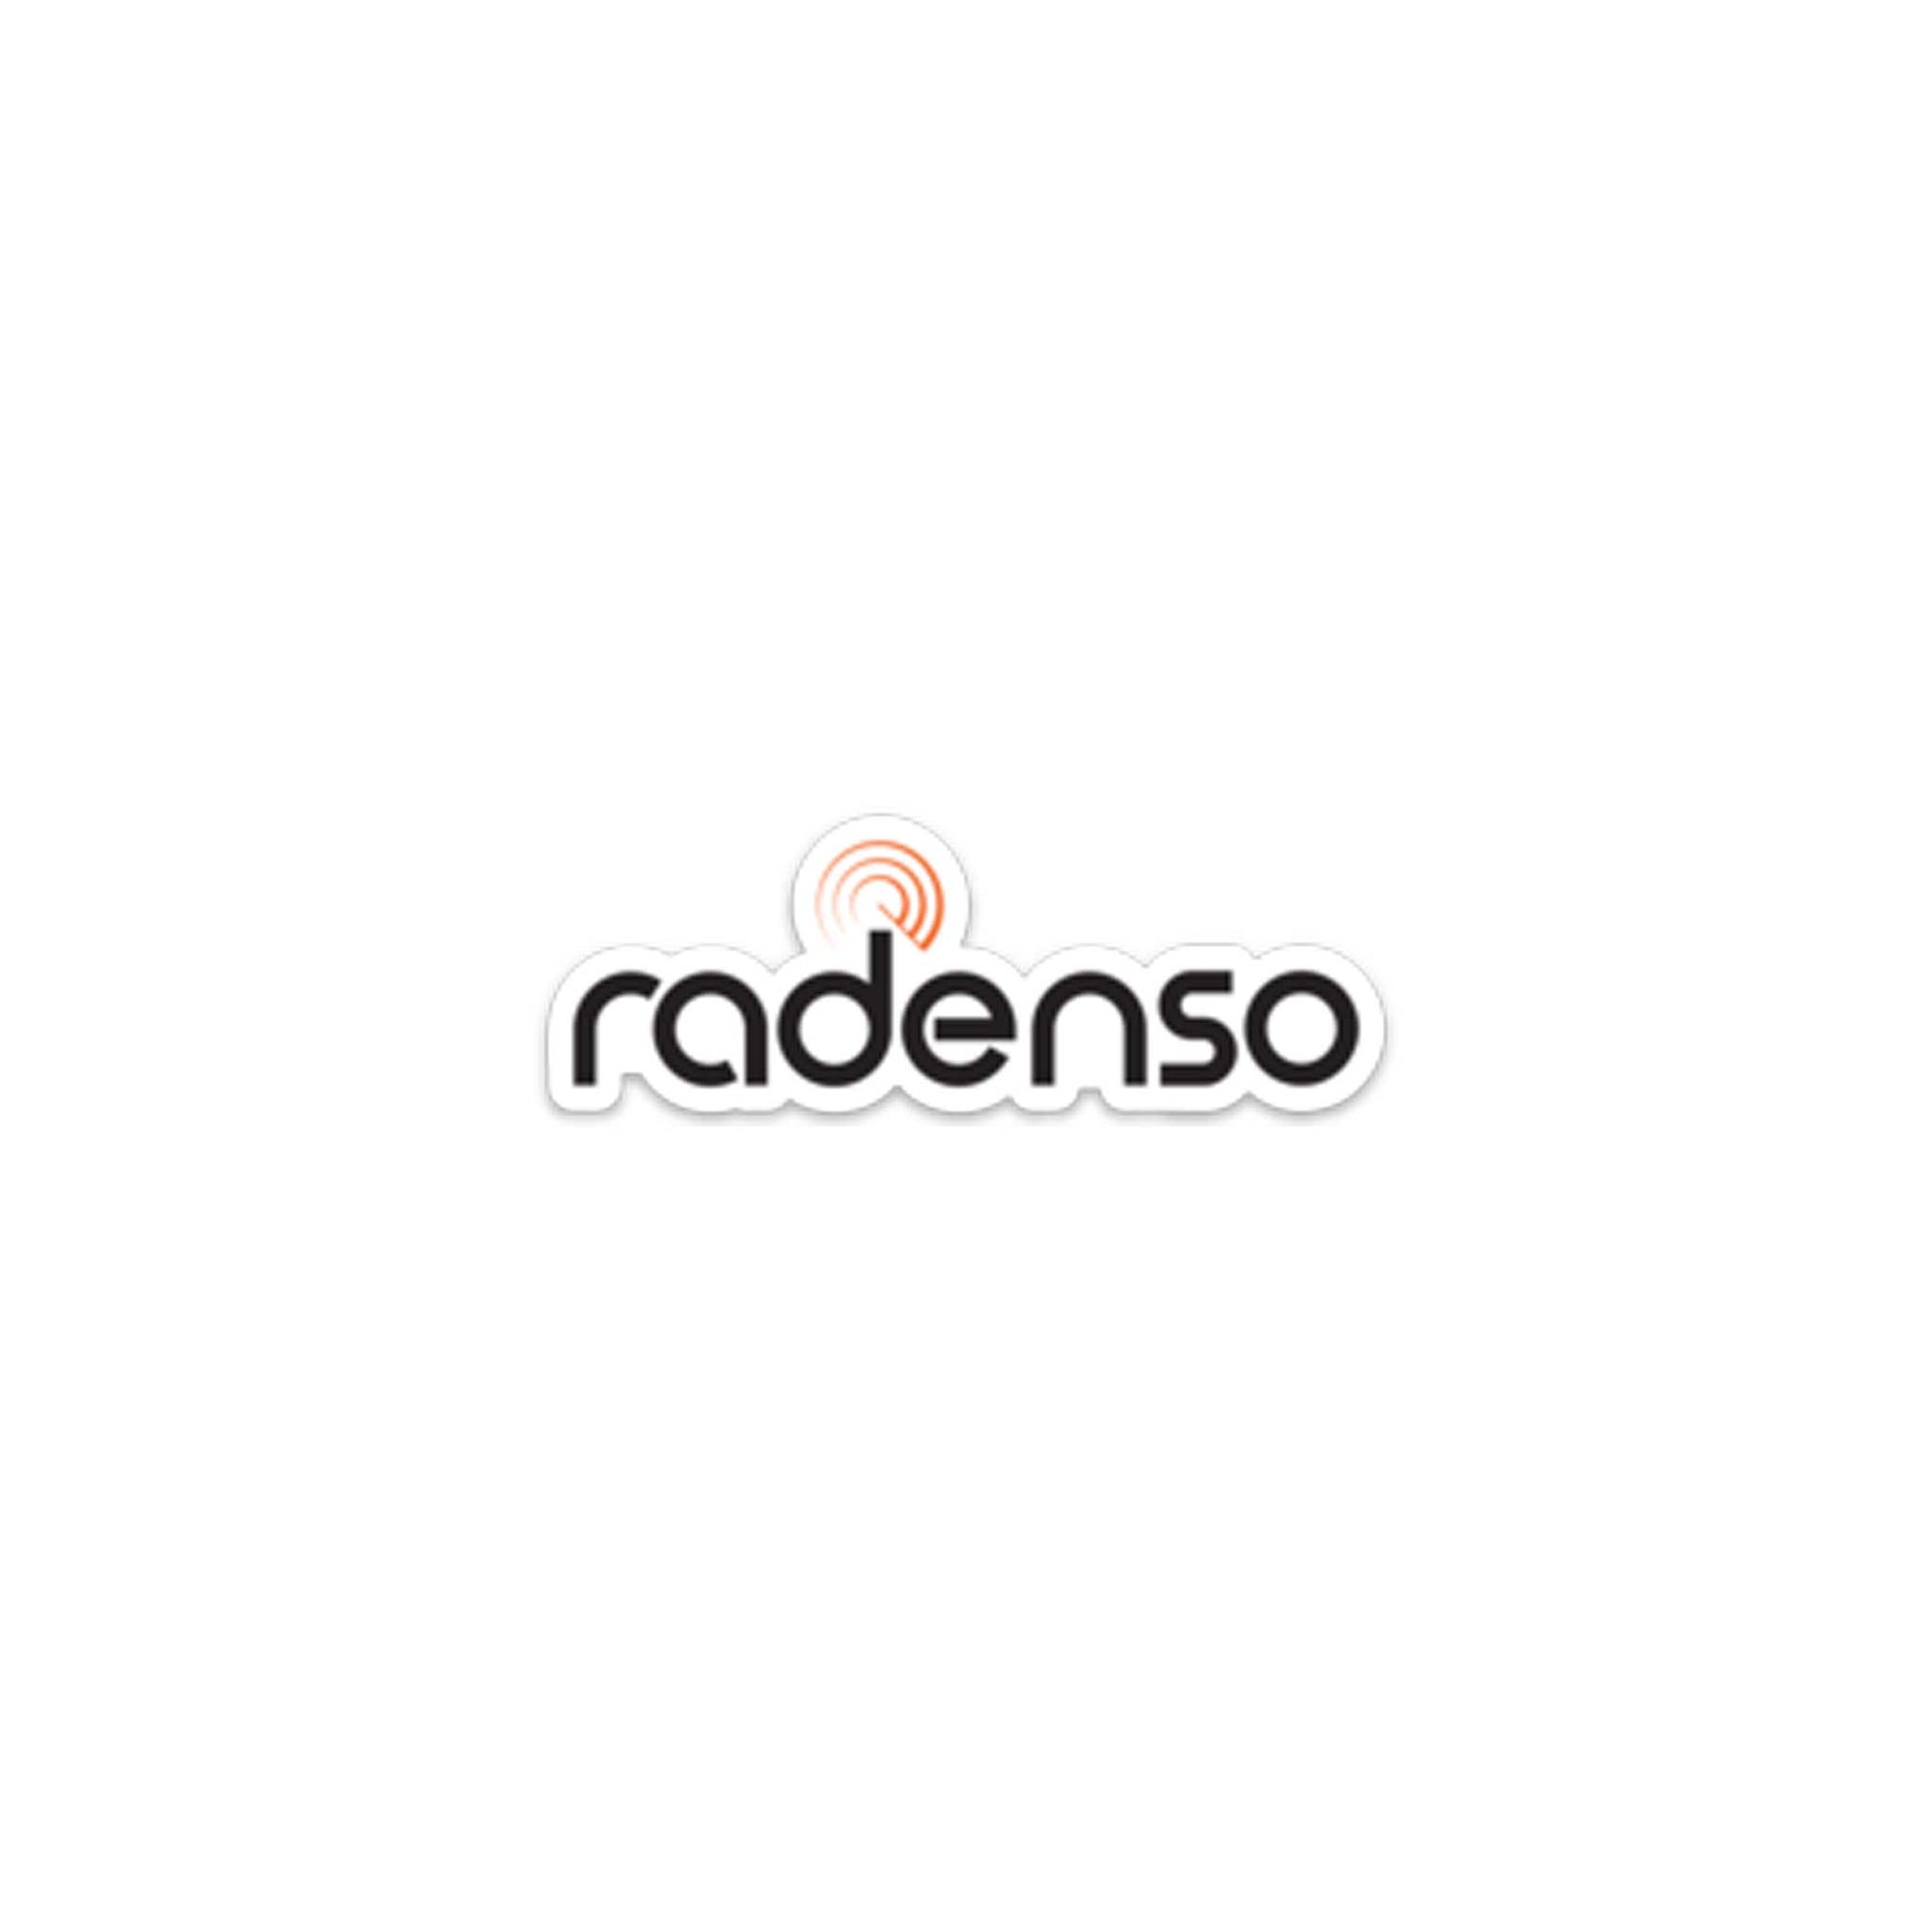 Radenso Vinyl Sticker